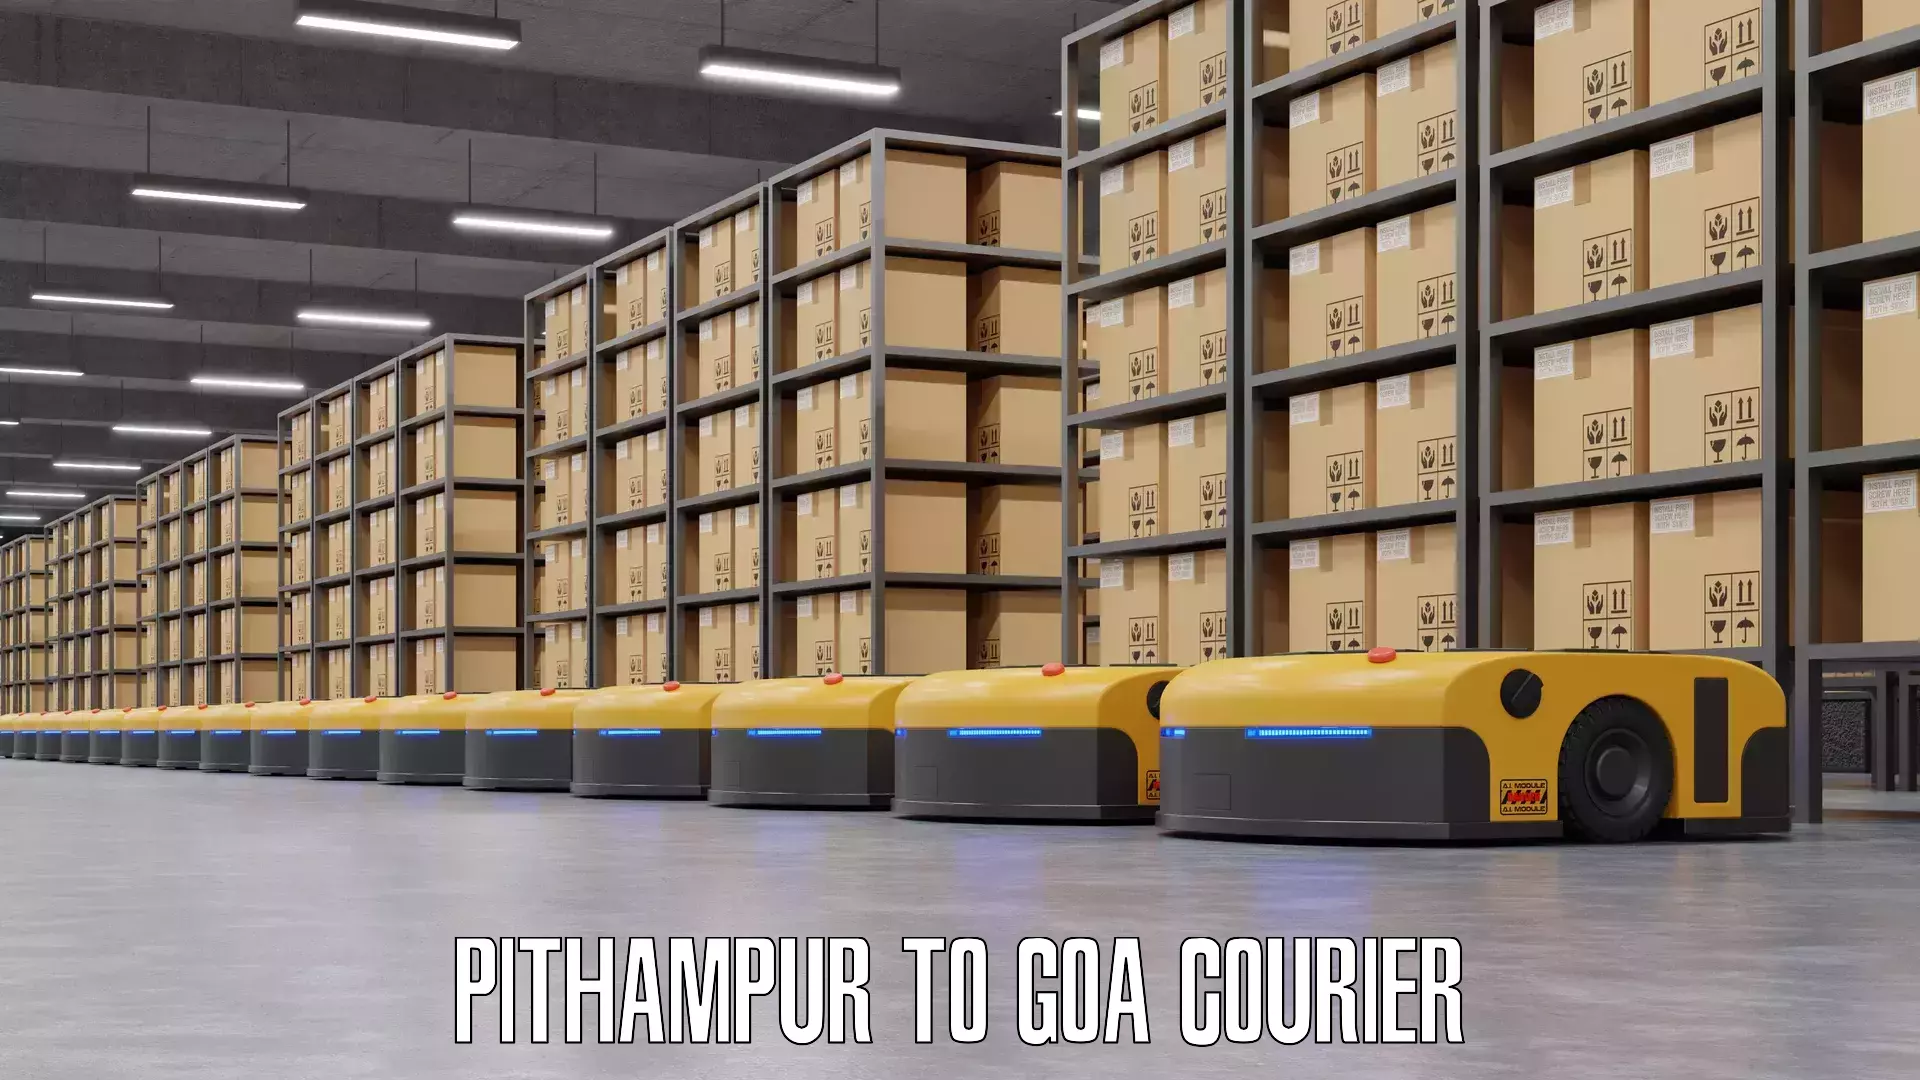 Same day luggage service Pithampur to Goa